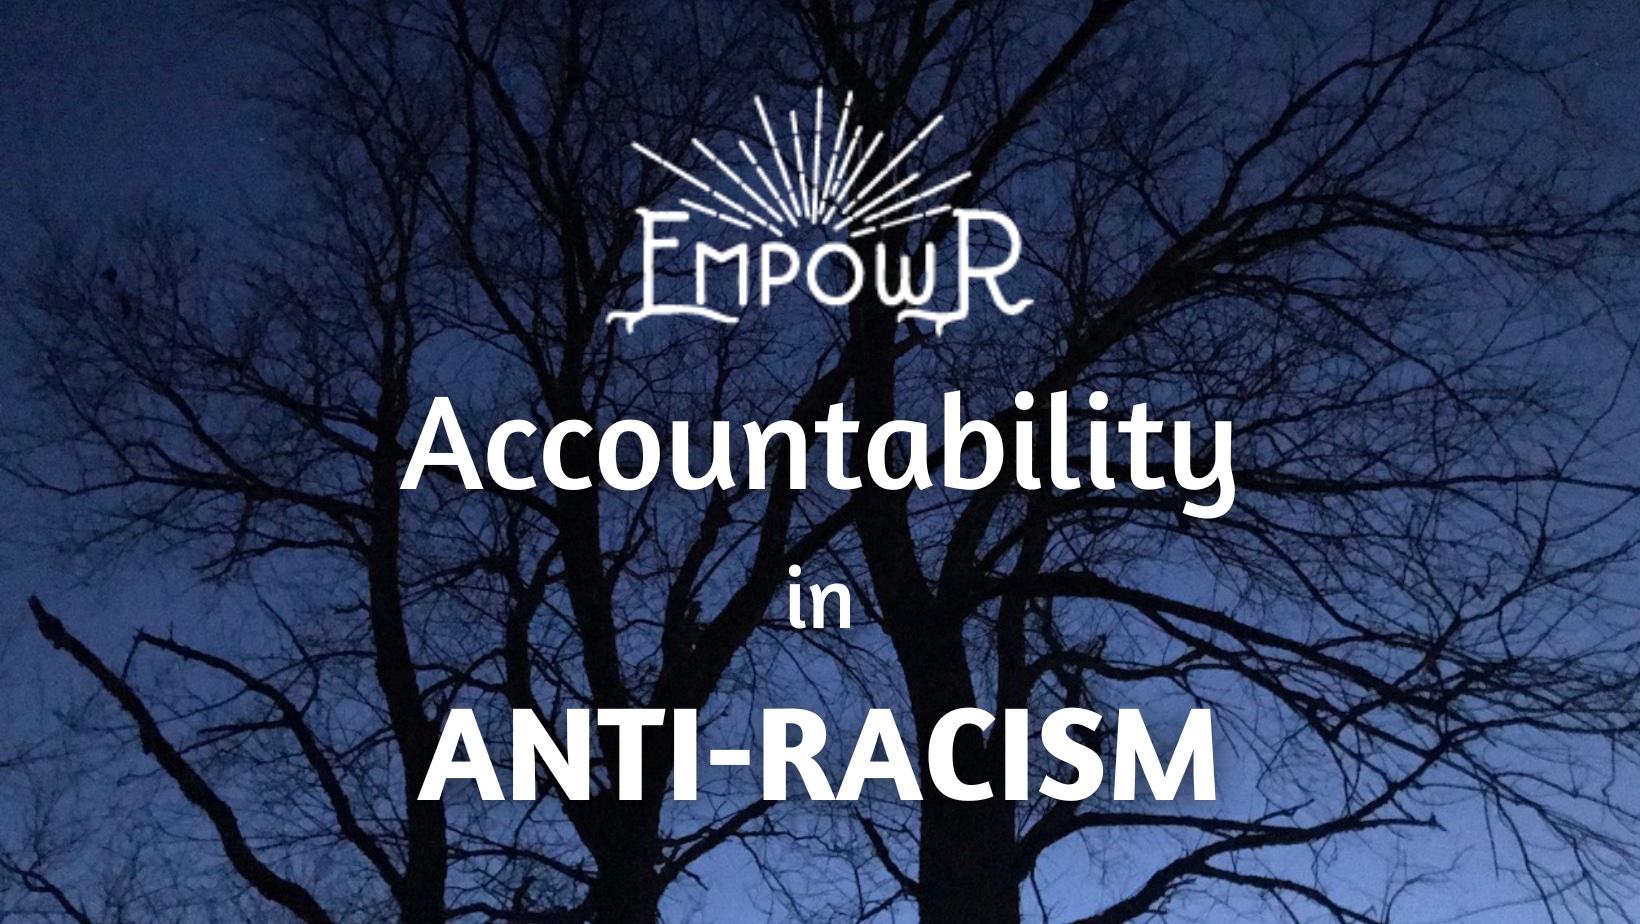 EmpowR Accountability in Anti-Racism program